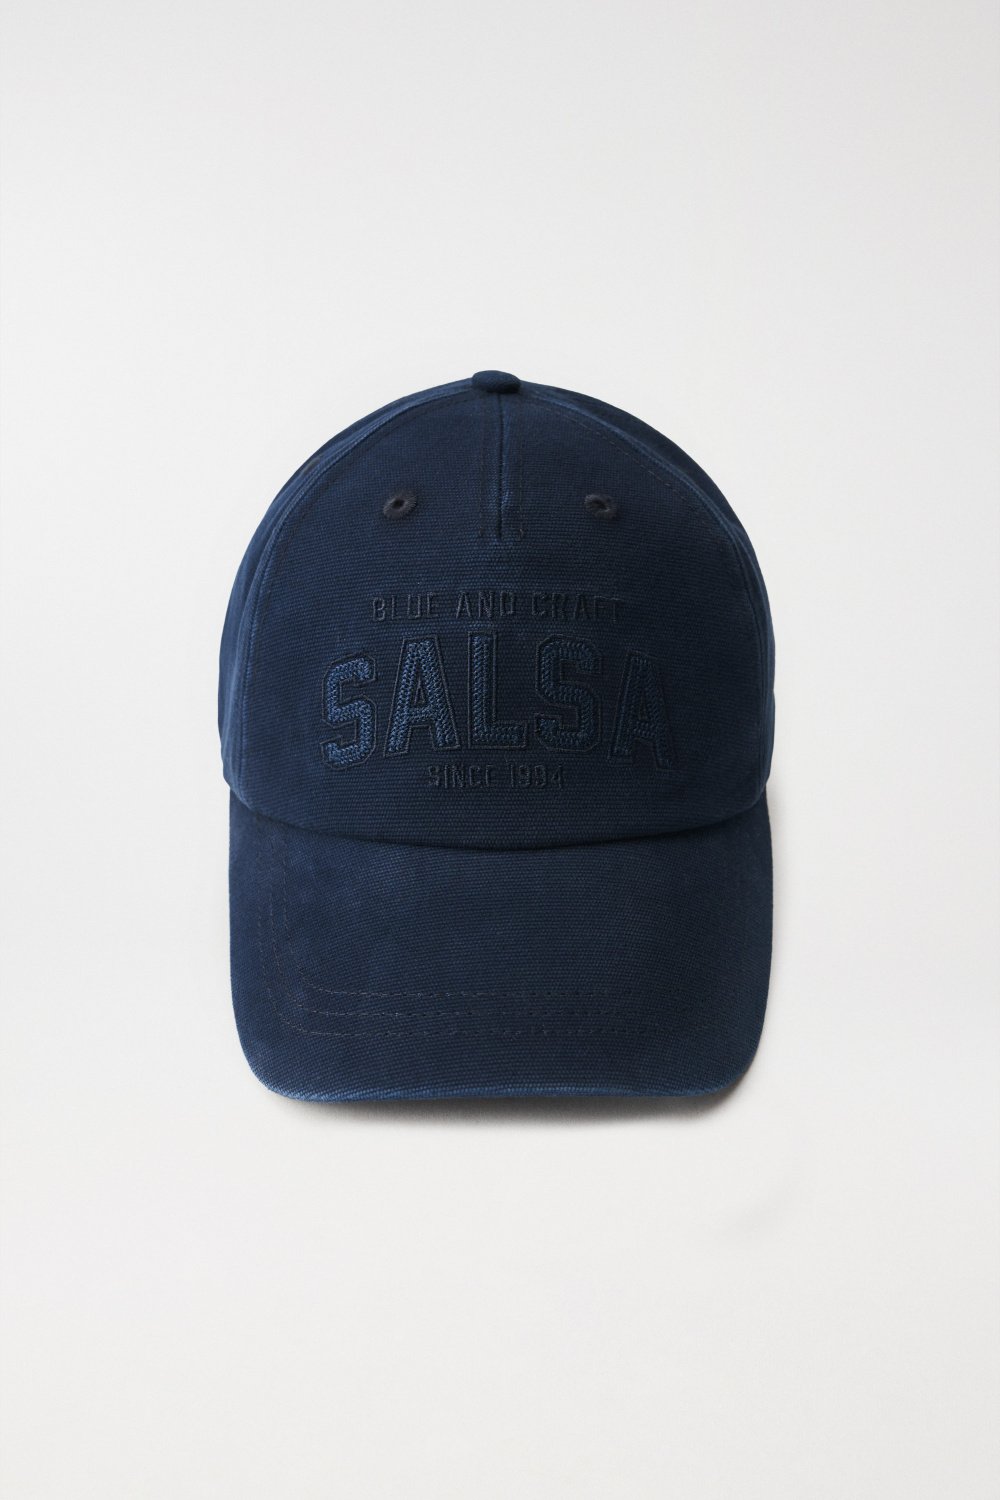 CAP WITH SALSA NAME - Salsa